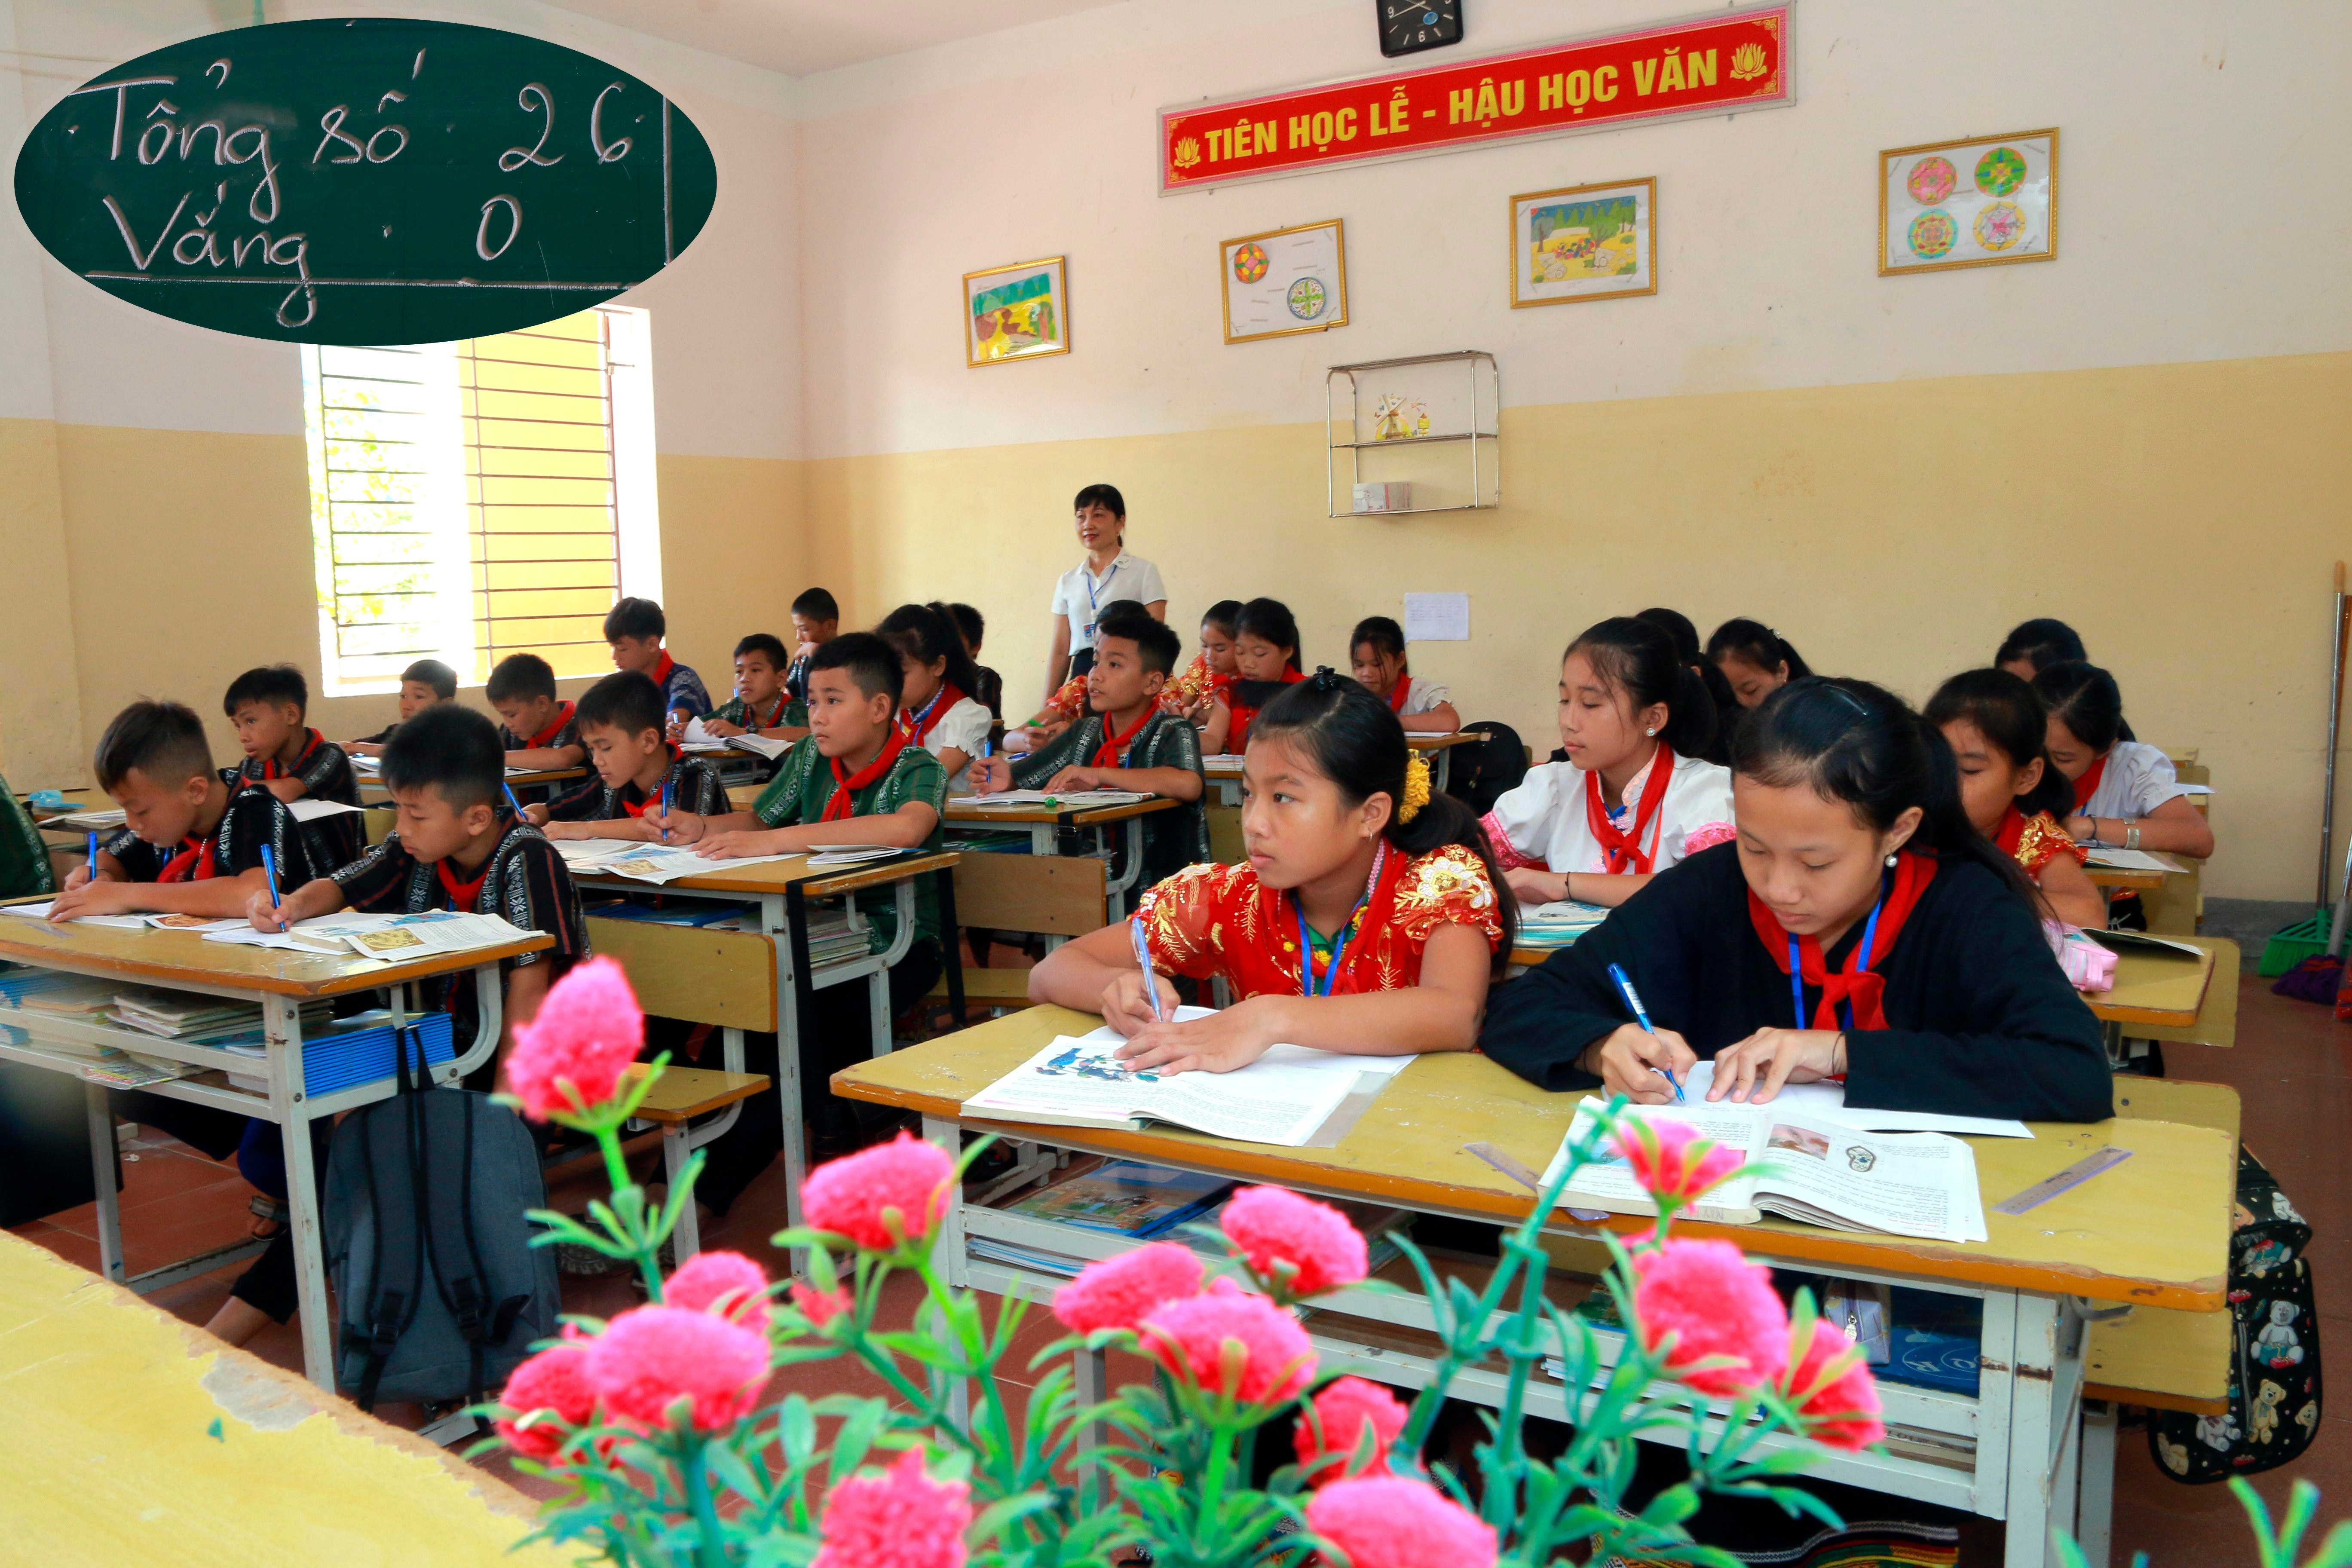 Trường PTDTNT THCS Tương Dương có 313 em học sinh là con em của đồng bào dân tộc: Ơ đu, Khớ mú, Mông, Thái, Tày poọng, Thổ theo học. Theo ghi nhận buổi học chính thức đầu tiên toàn trường không vắng học sinh nào.